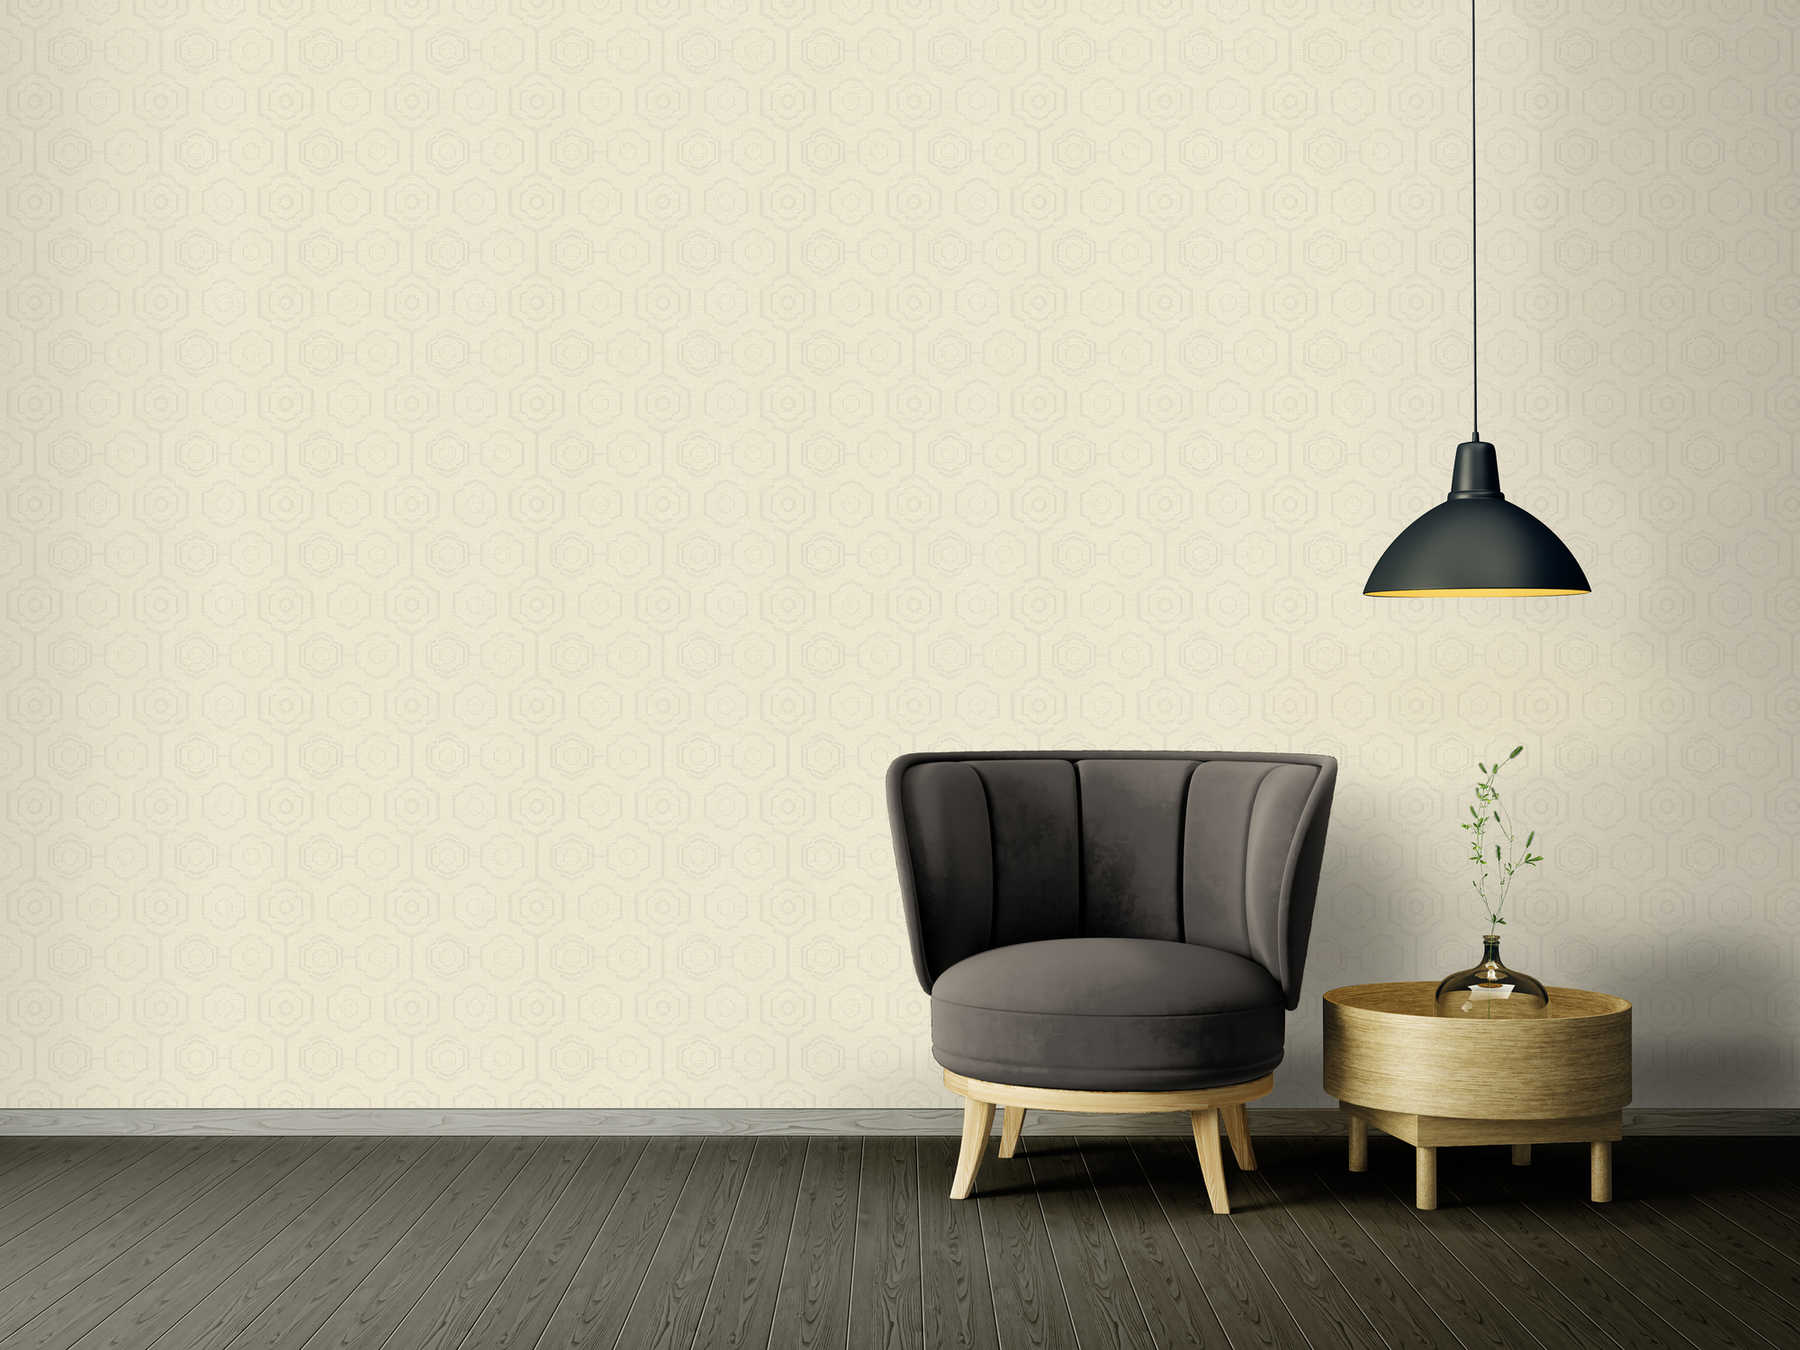             Textil-Optik Tapete geometrisches Design & Glanz-Effekt – Creme, Grau, Beige
        